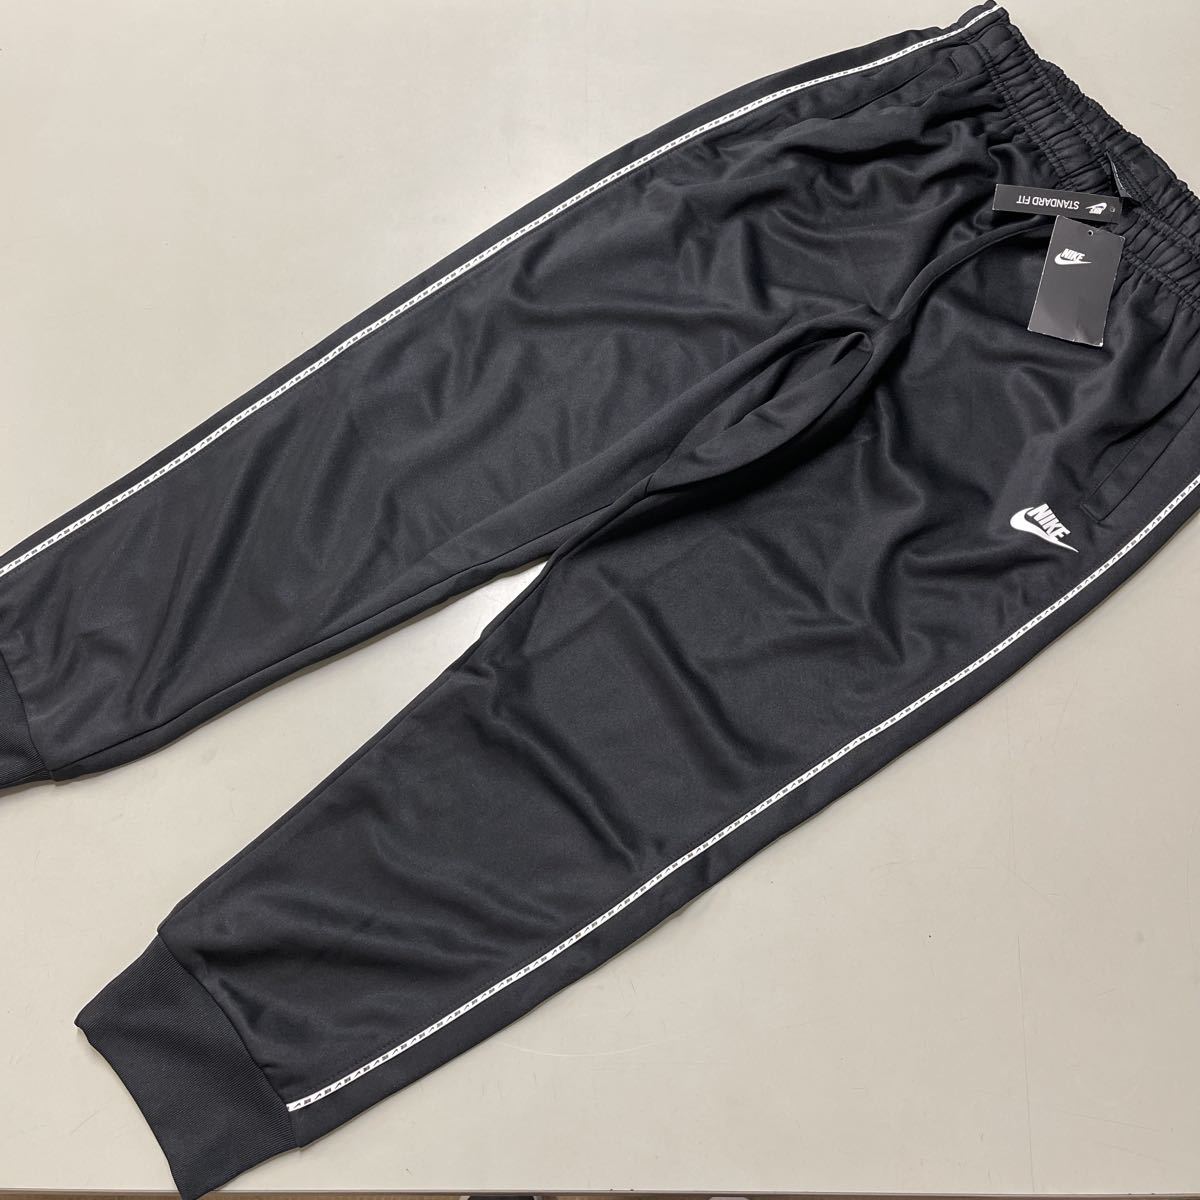 NIKE ジョガーパンツ 未使用 黒 ブラック ジャージ パンツ Mサイズ メンズ ナイキ スタンダードフィット STANDARD FIT